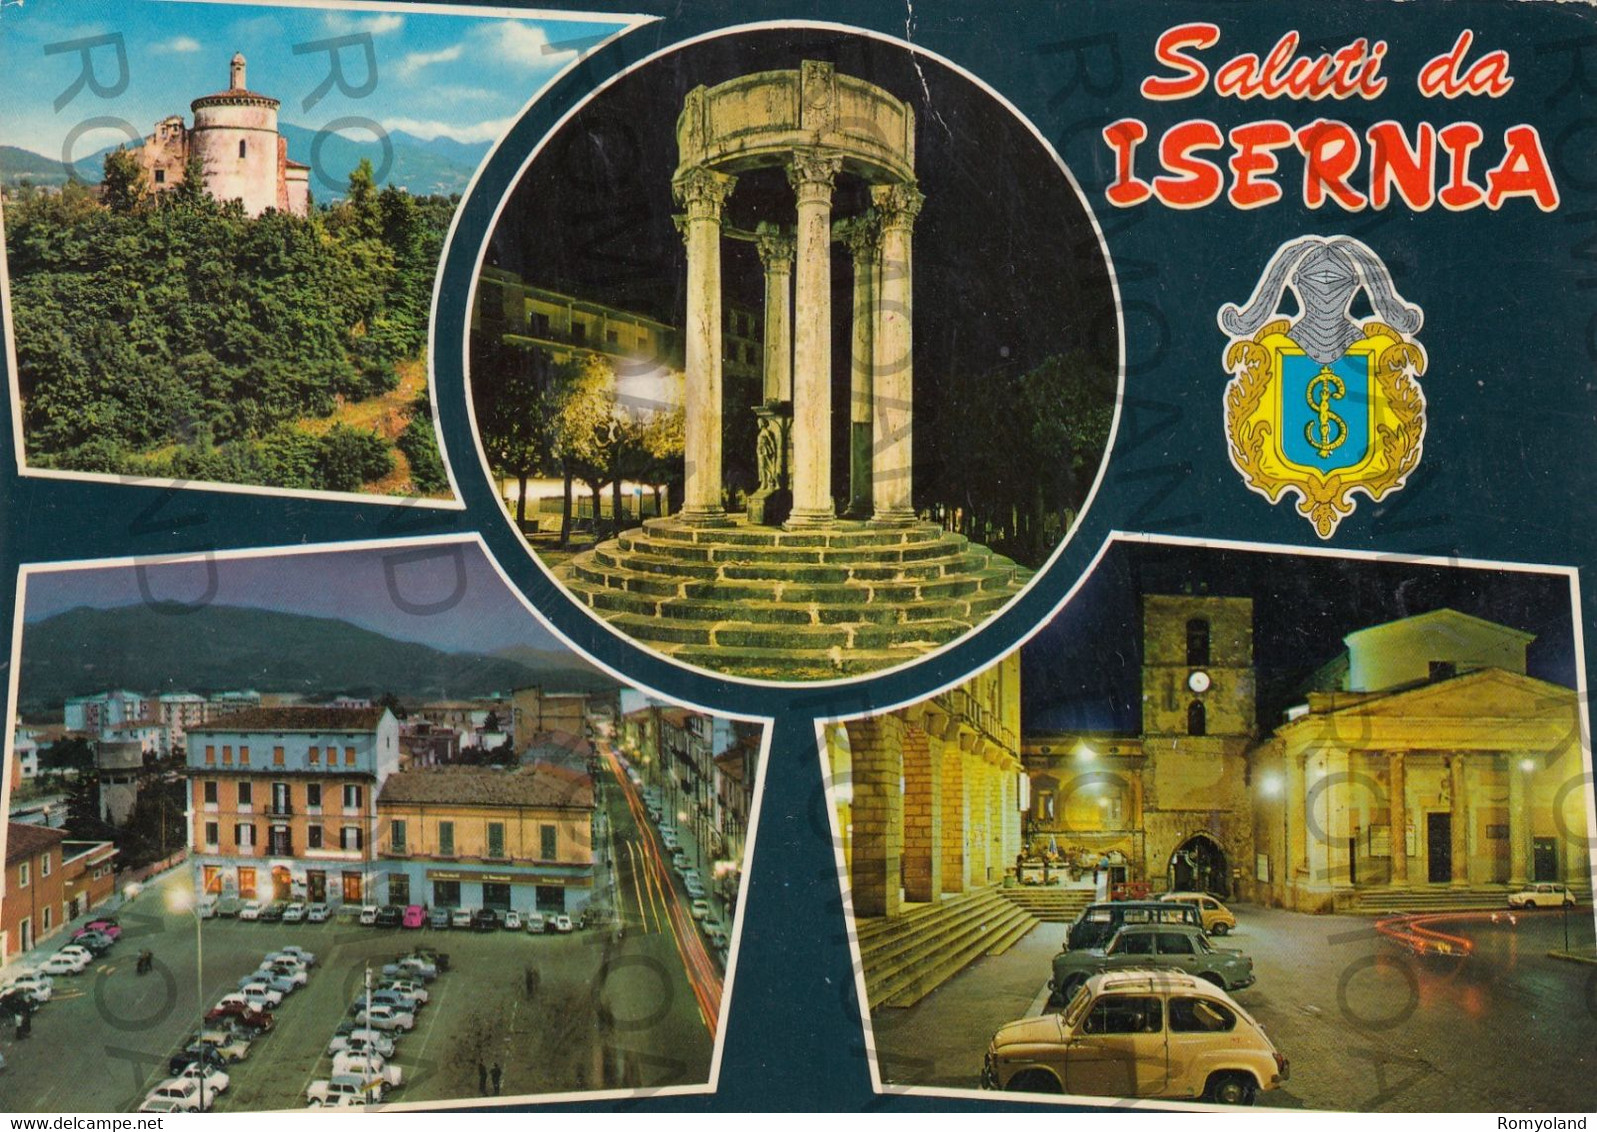 CARTOLINA  ISERNIA,MOLISE-SALUTI-STORIA,MEMORIA,CULTURA,RELIGIONE,IMPERO ROMANO,BELLA ITALIA,VIAGGIATA 1972 - Isernia